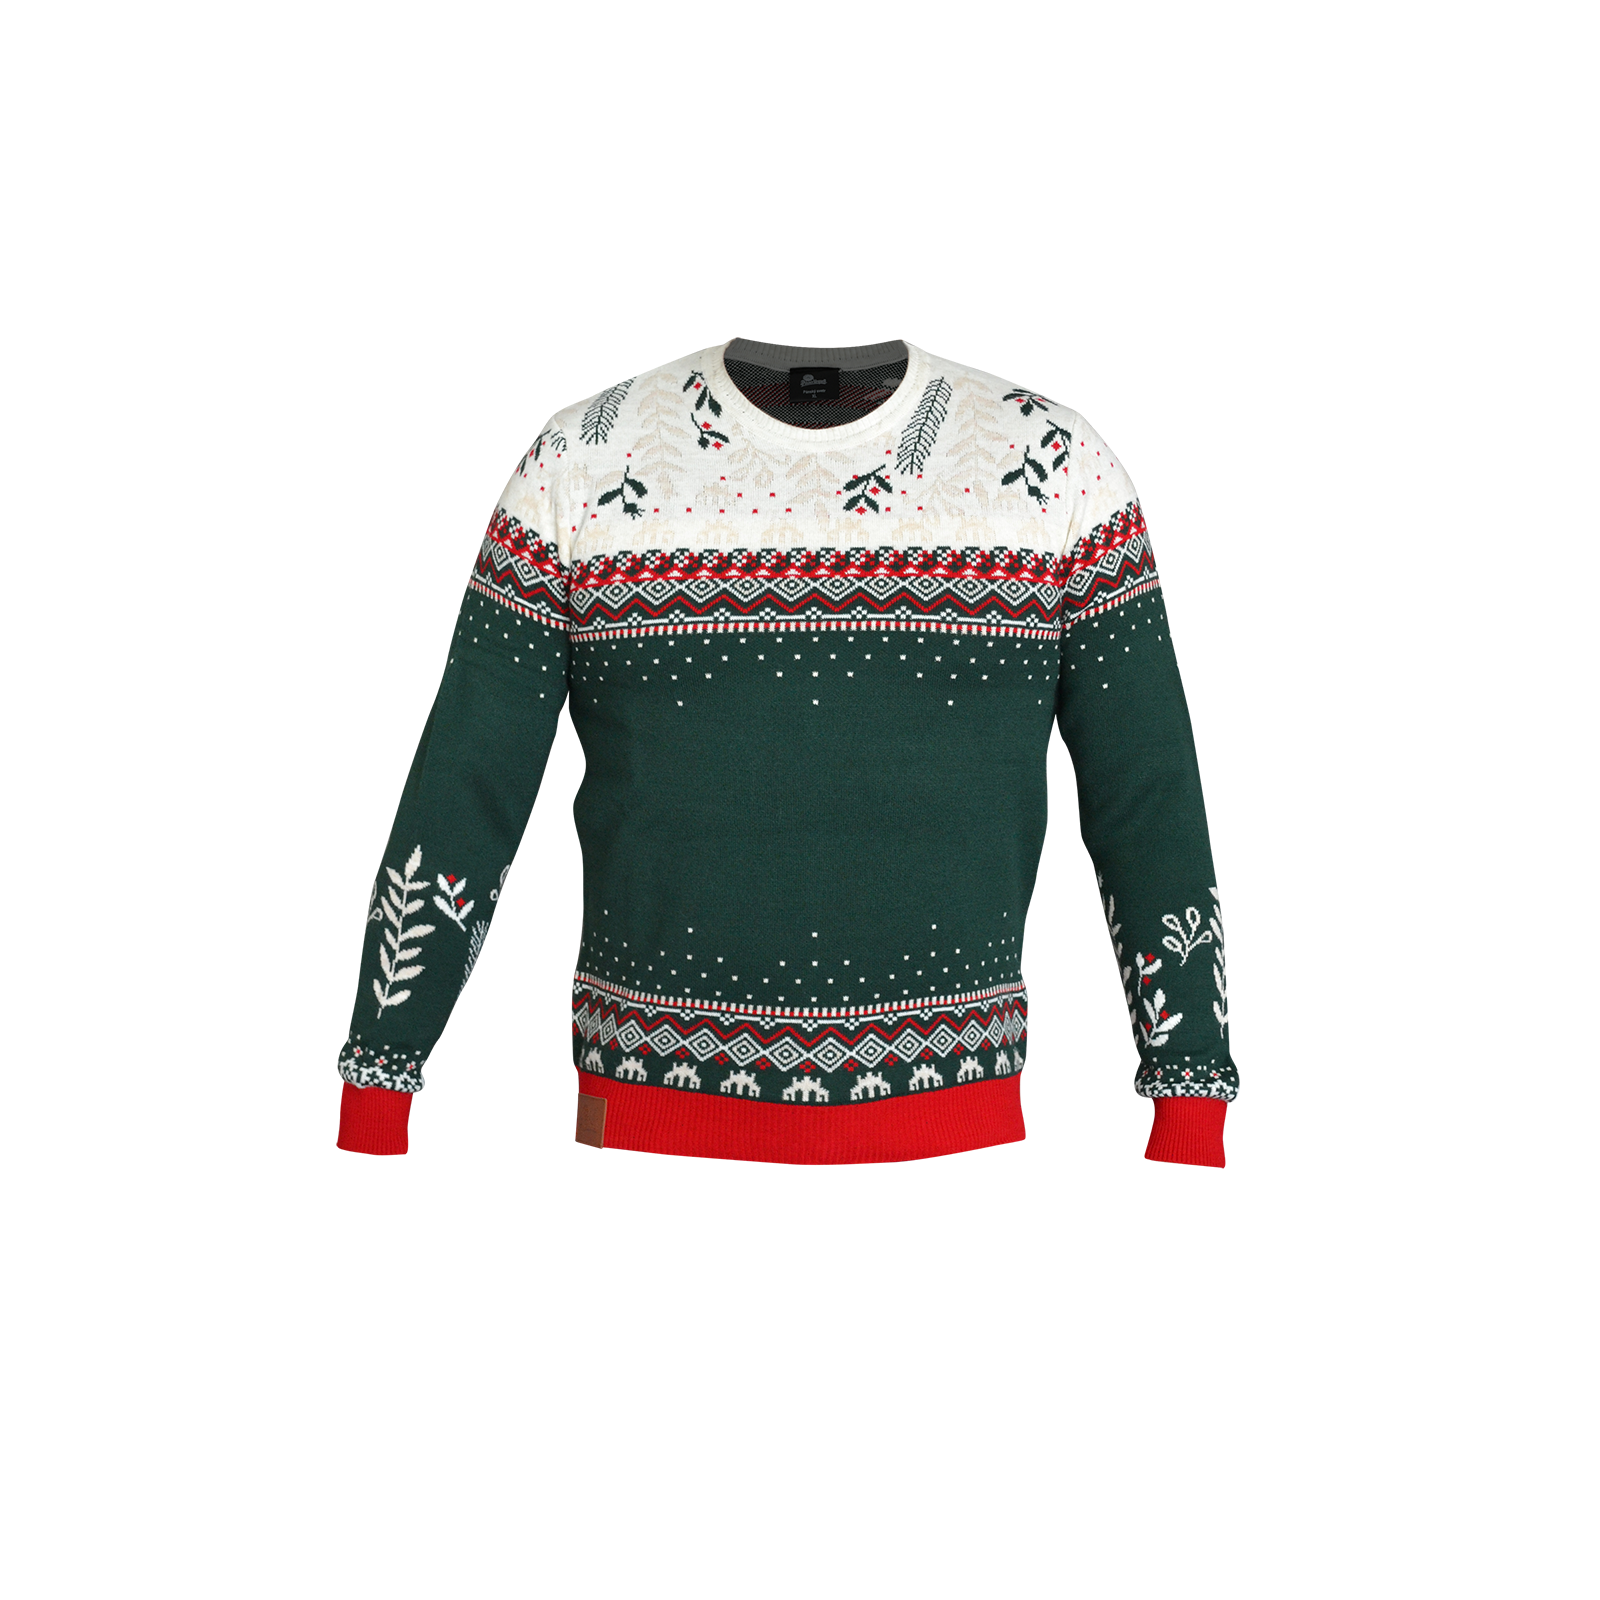 Pilsner Urquell Christmas Sweater for Men